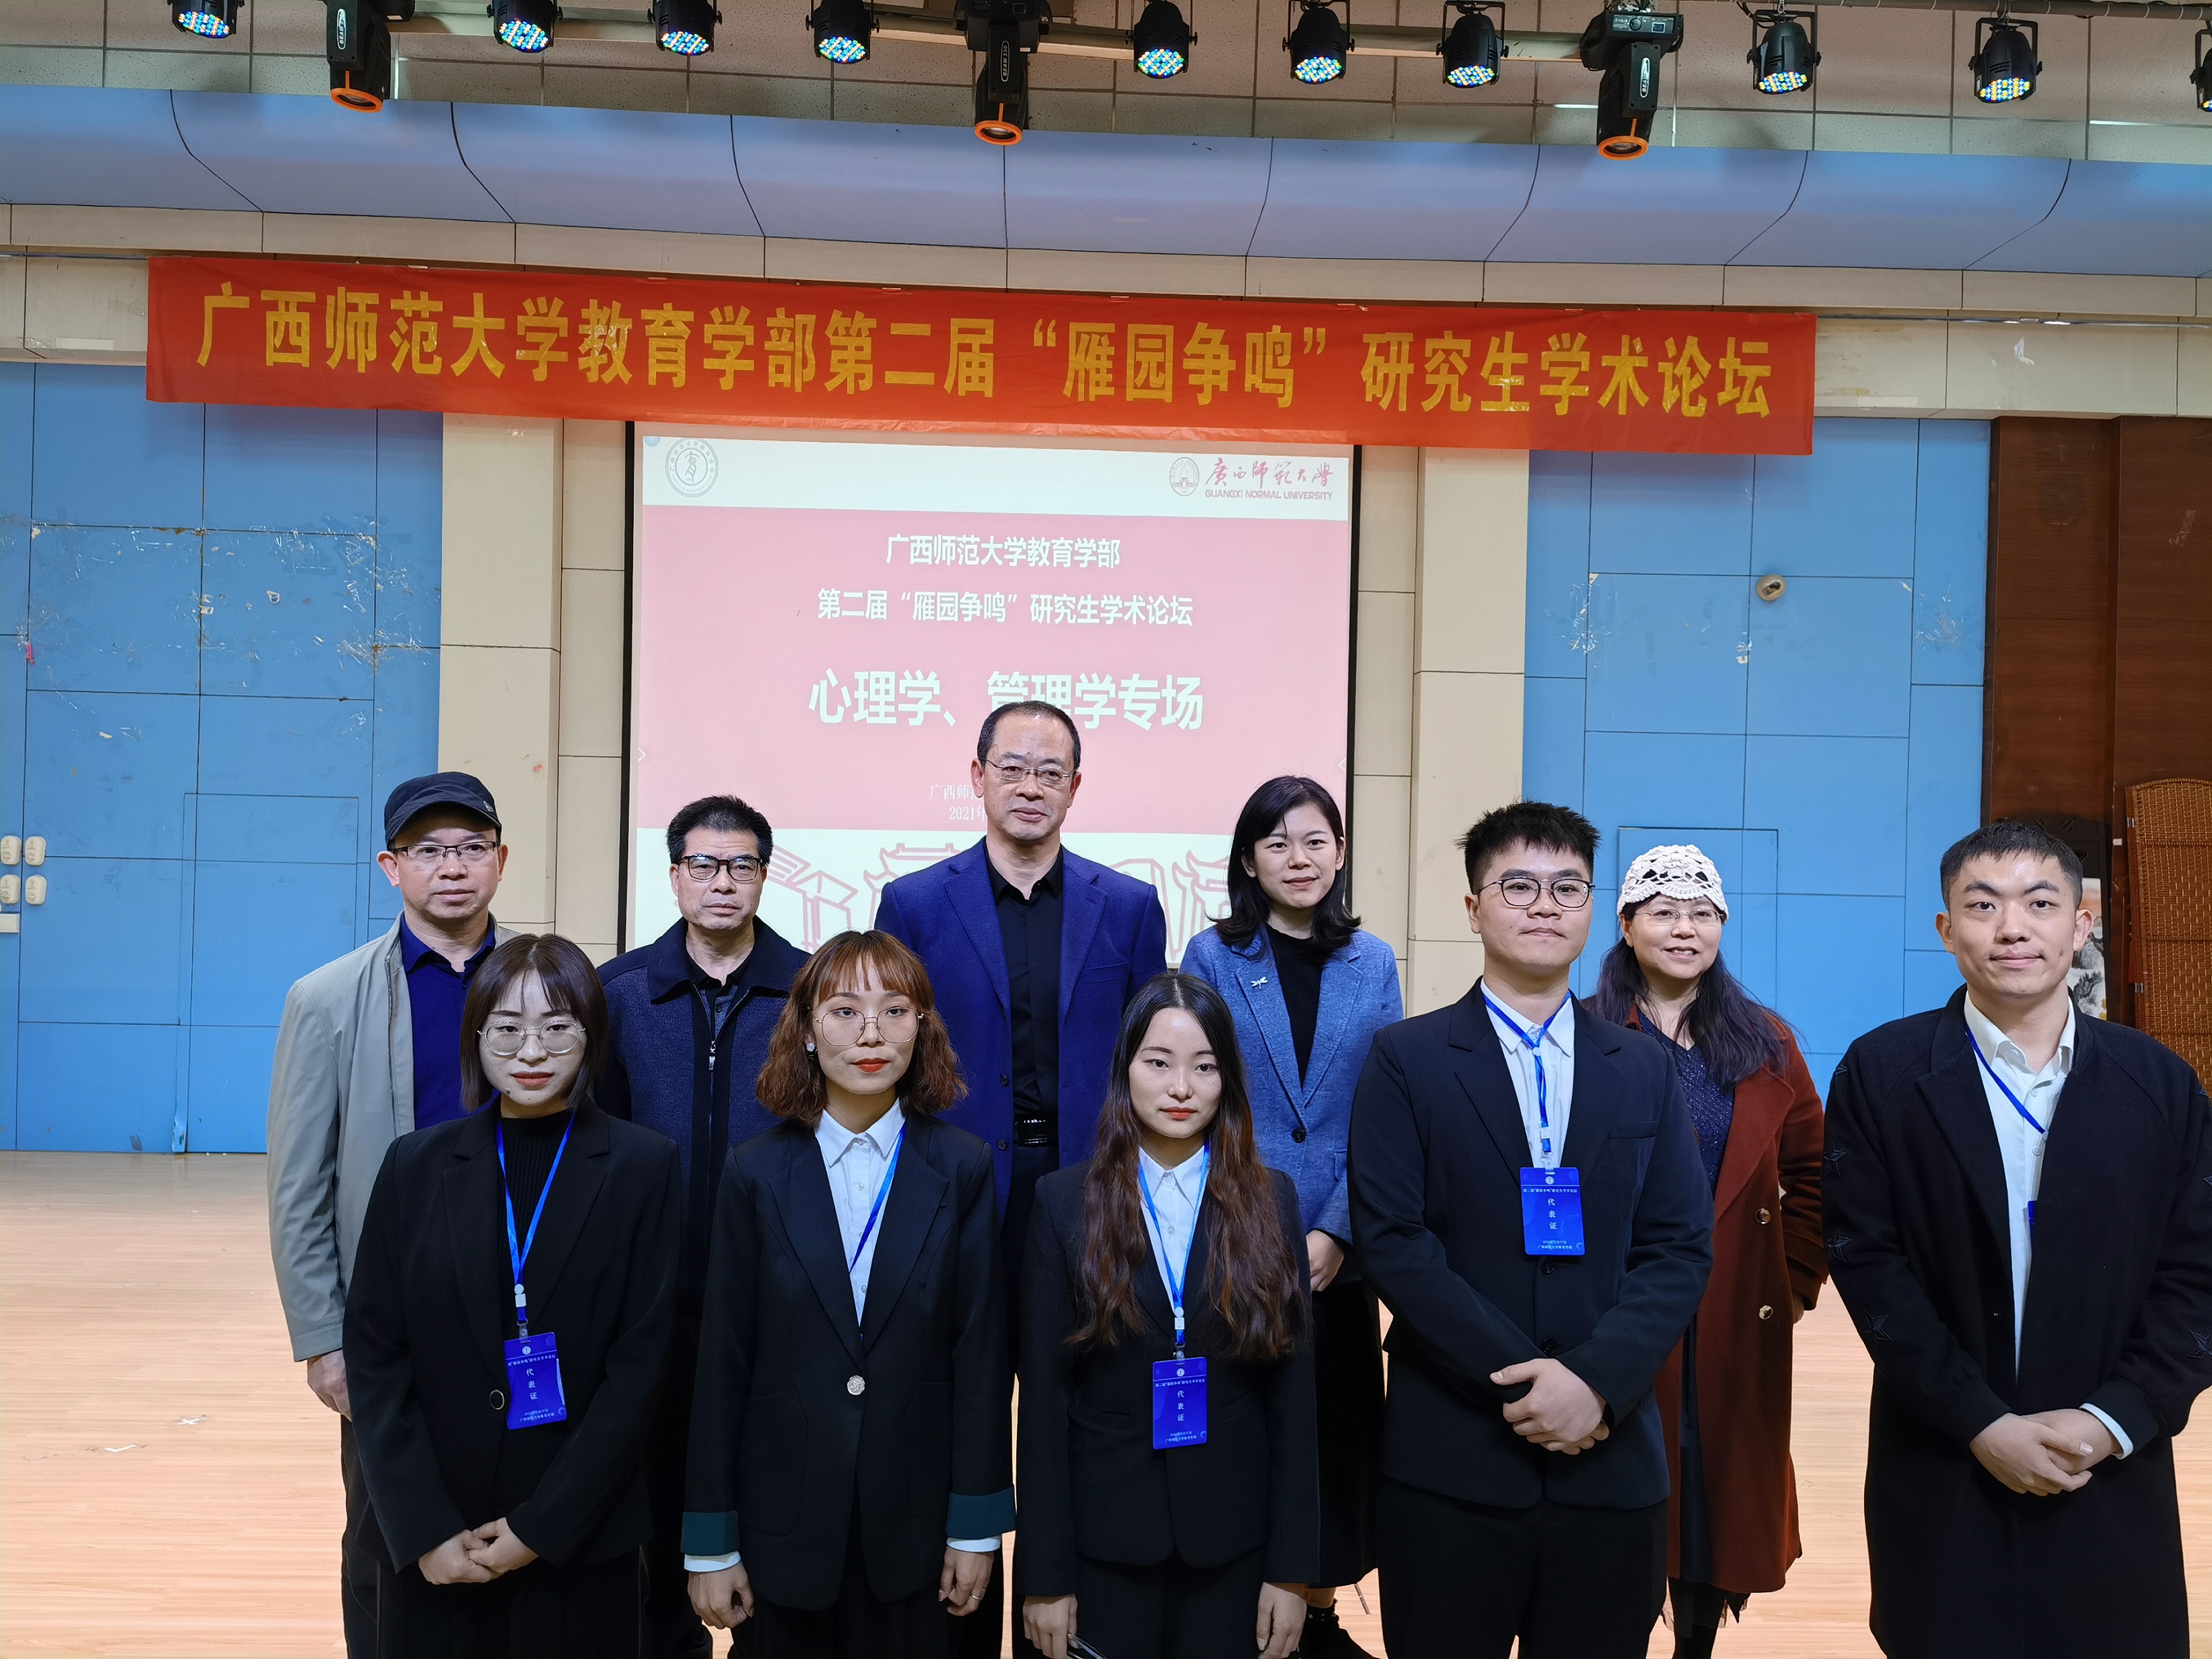 【学风建设】广西师范大学教育学部成功举办第二届"雁园争鸣"研究生